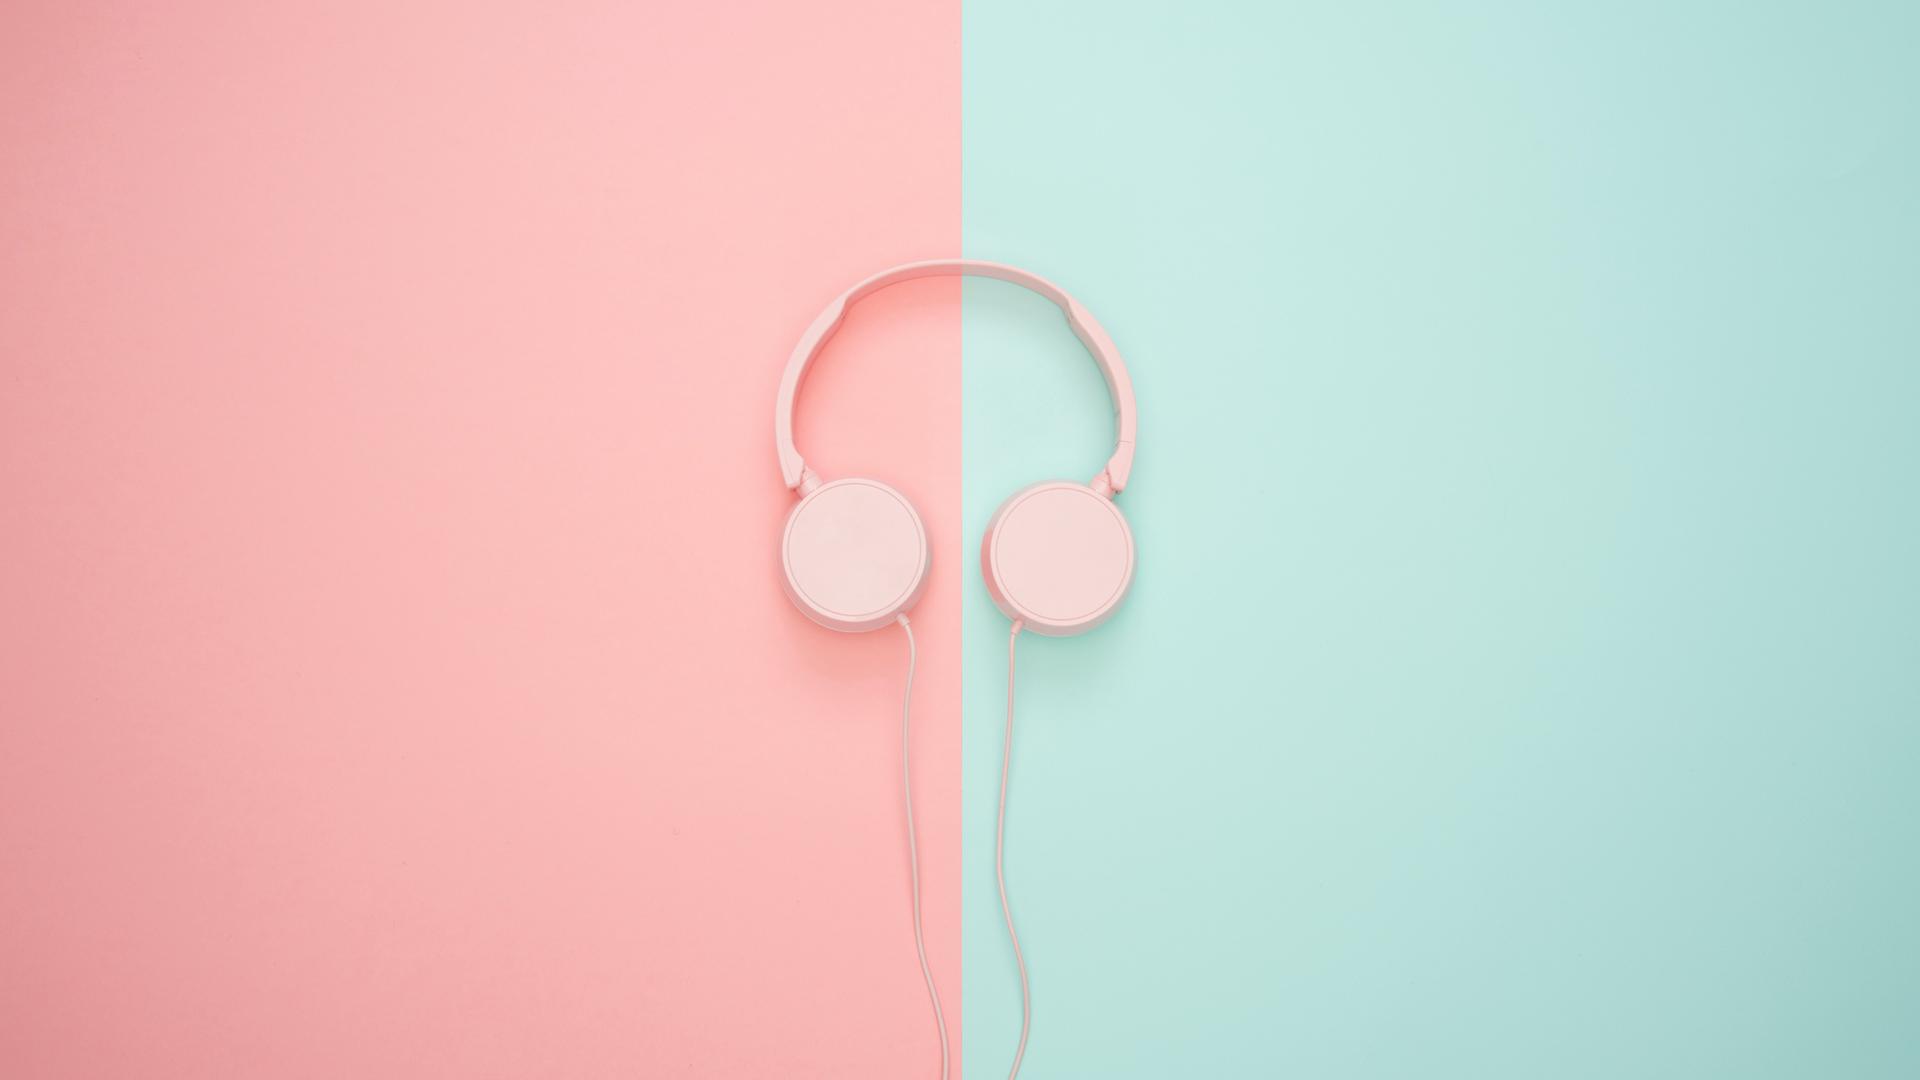 Ein Paar Kopfhörer liegen auf pink-türkisem Hintergrund.